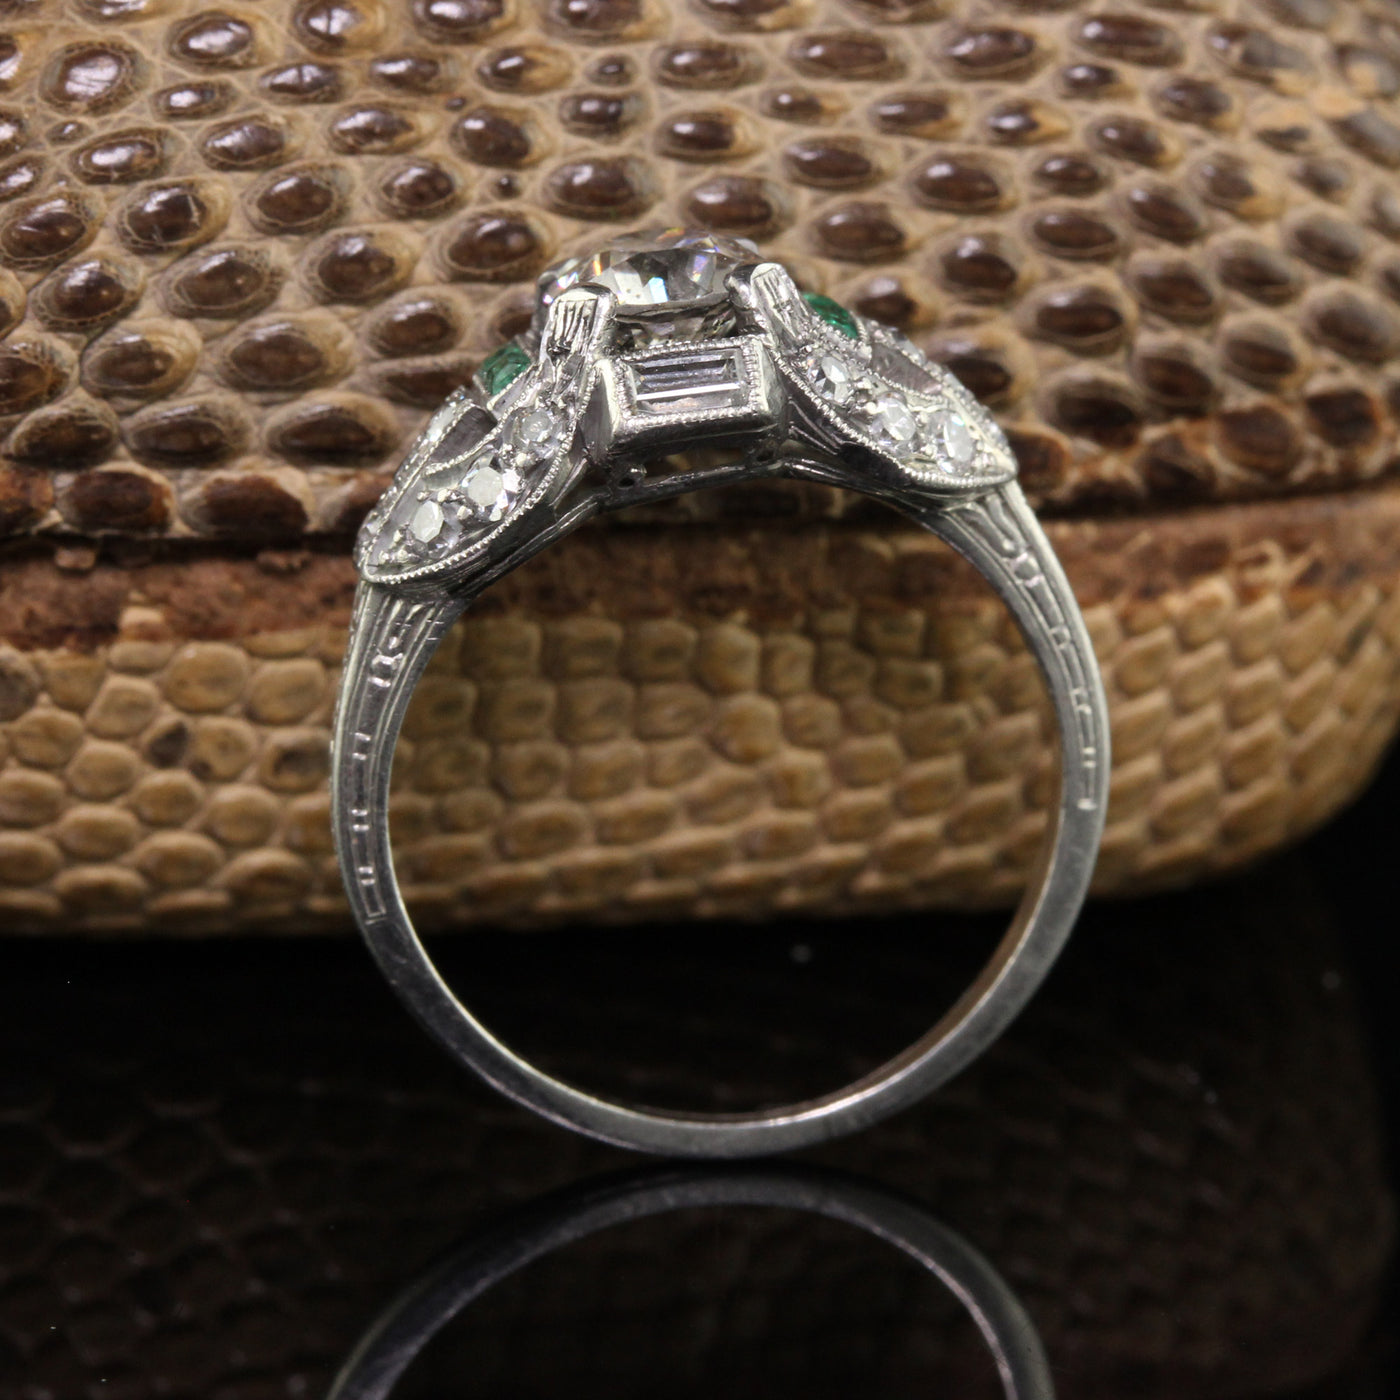 Antique Art Deco Platinum Old Euro Diamond and Emerald Engagement Ring